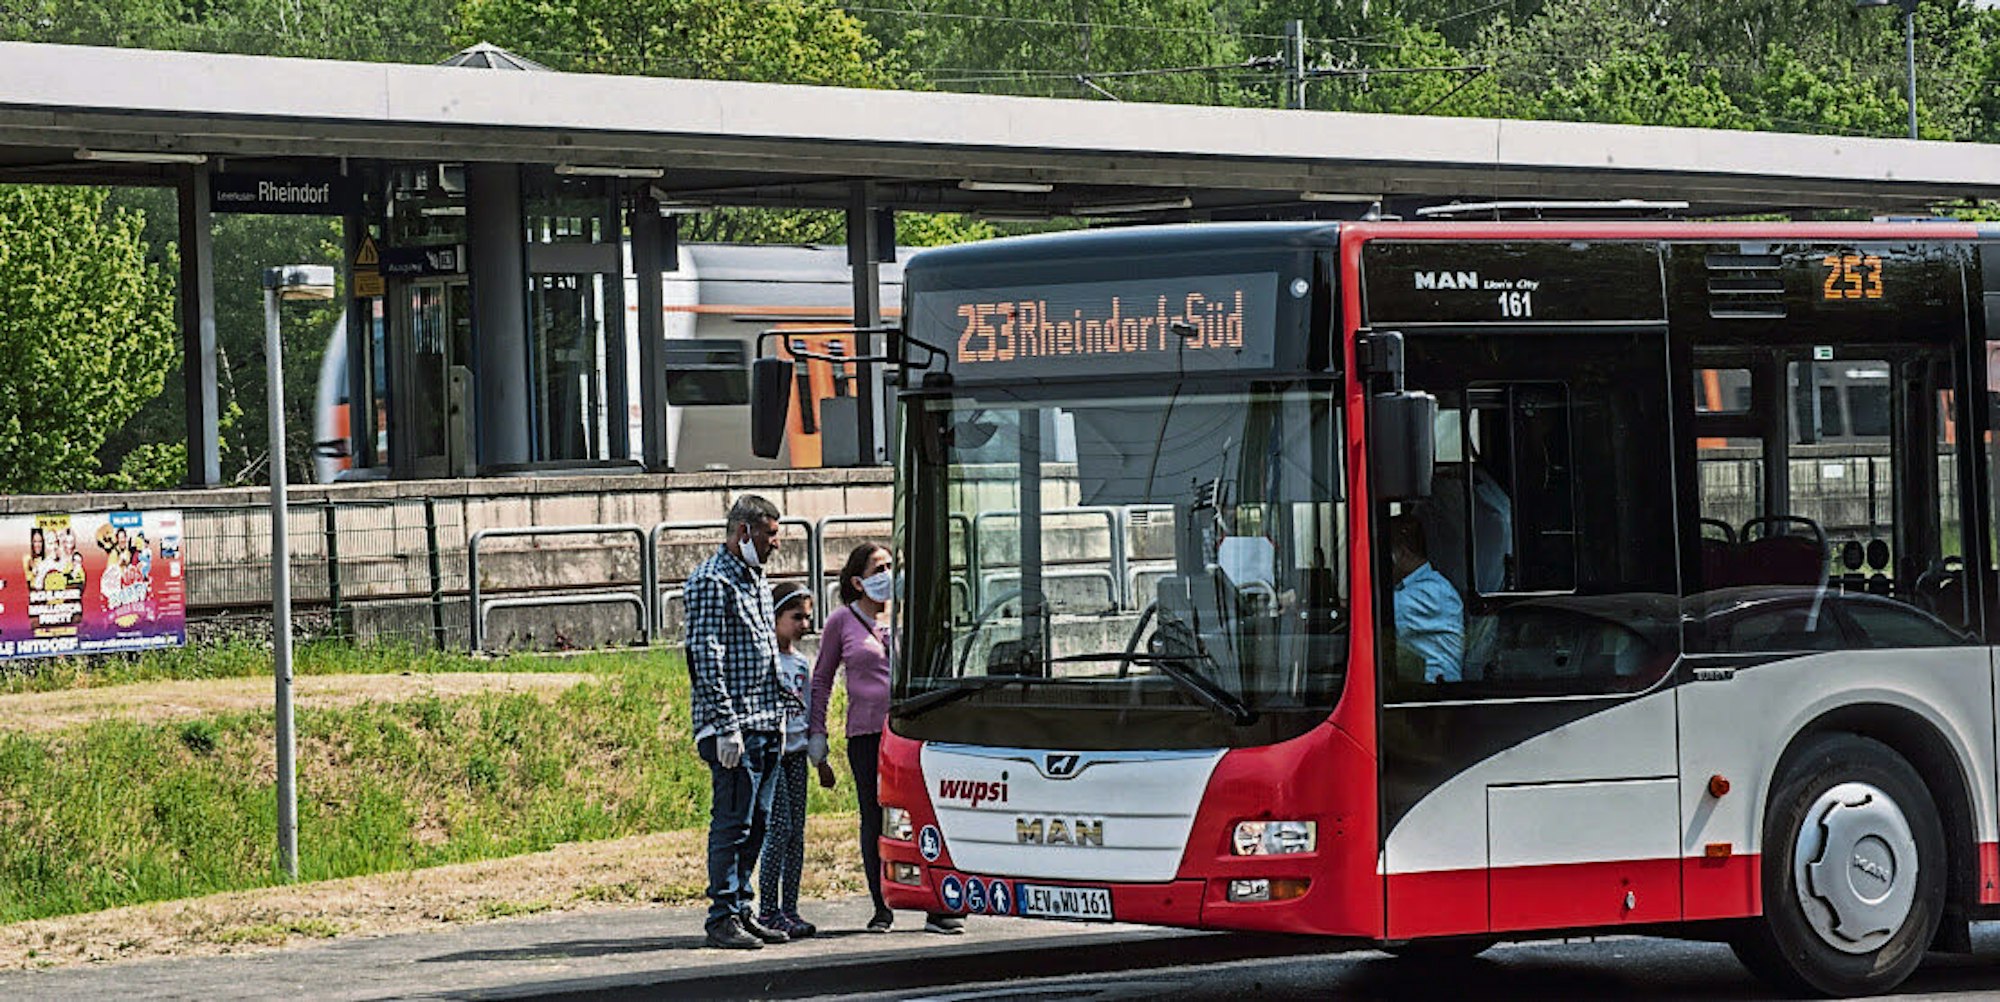 Die Buslinie 253 wird seit Anfang März von der Wupsi betrieben. Die Politiker sehen darin Chancen, das Angebot auszubauen und zu verbessern.